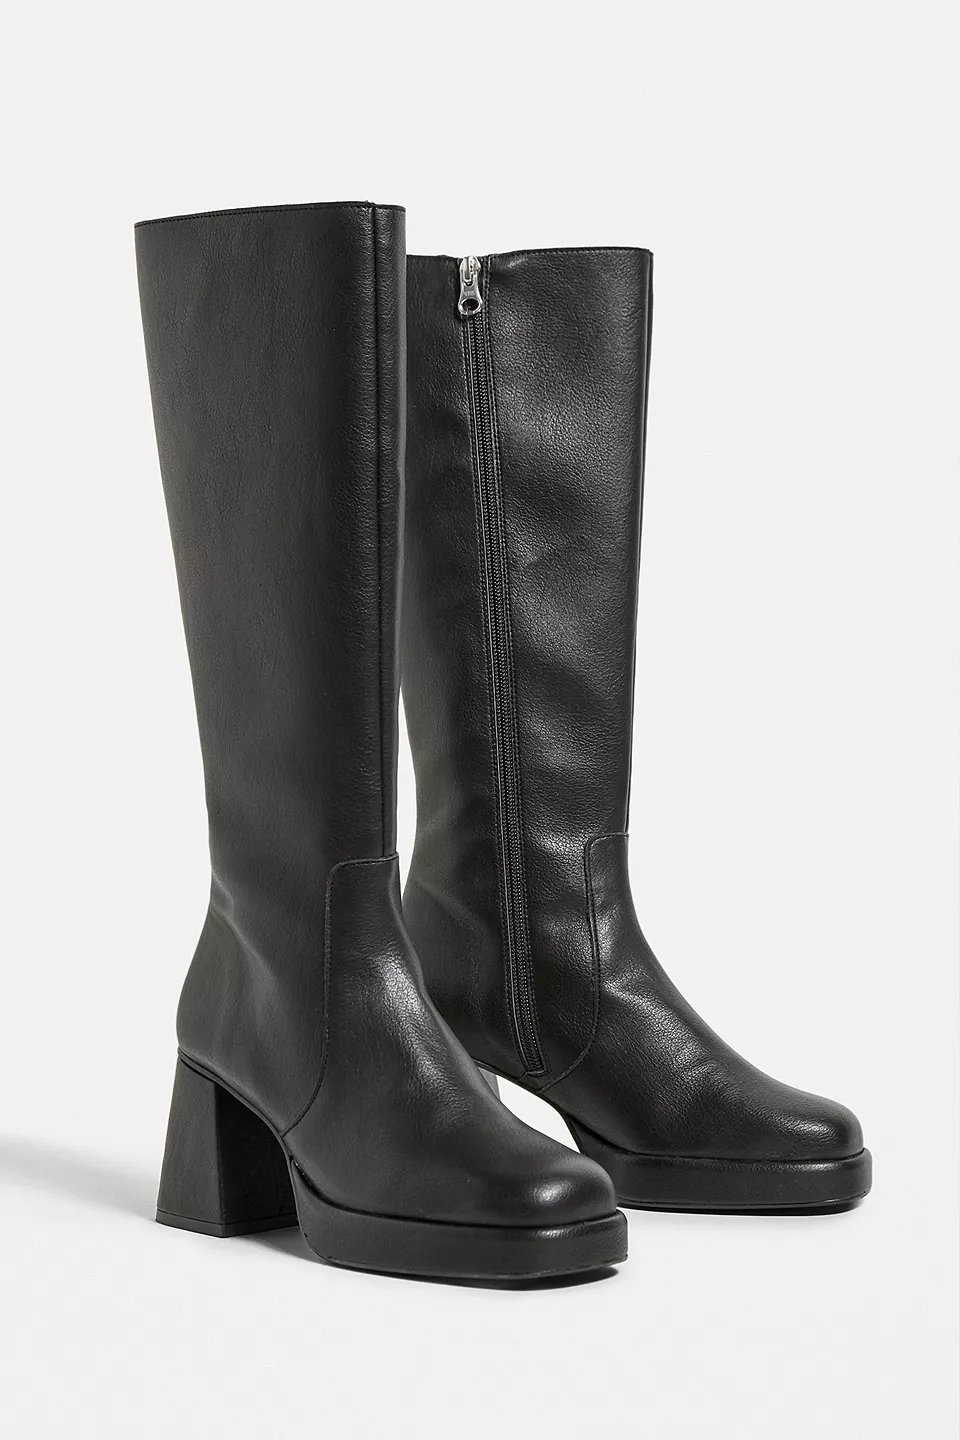 2&gt;UO Vix Knee High Black Boots €139